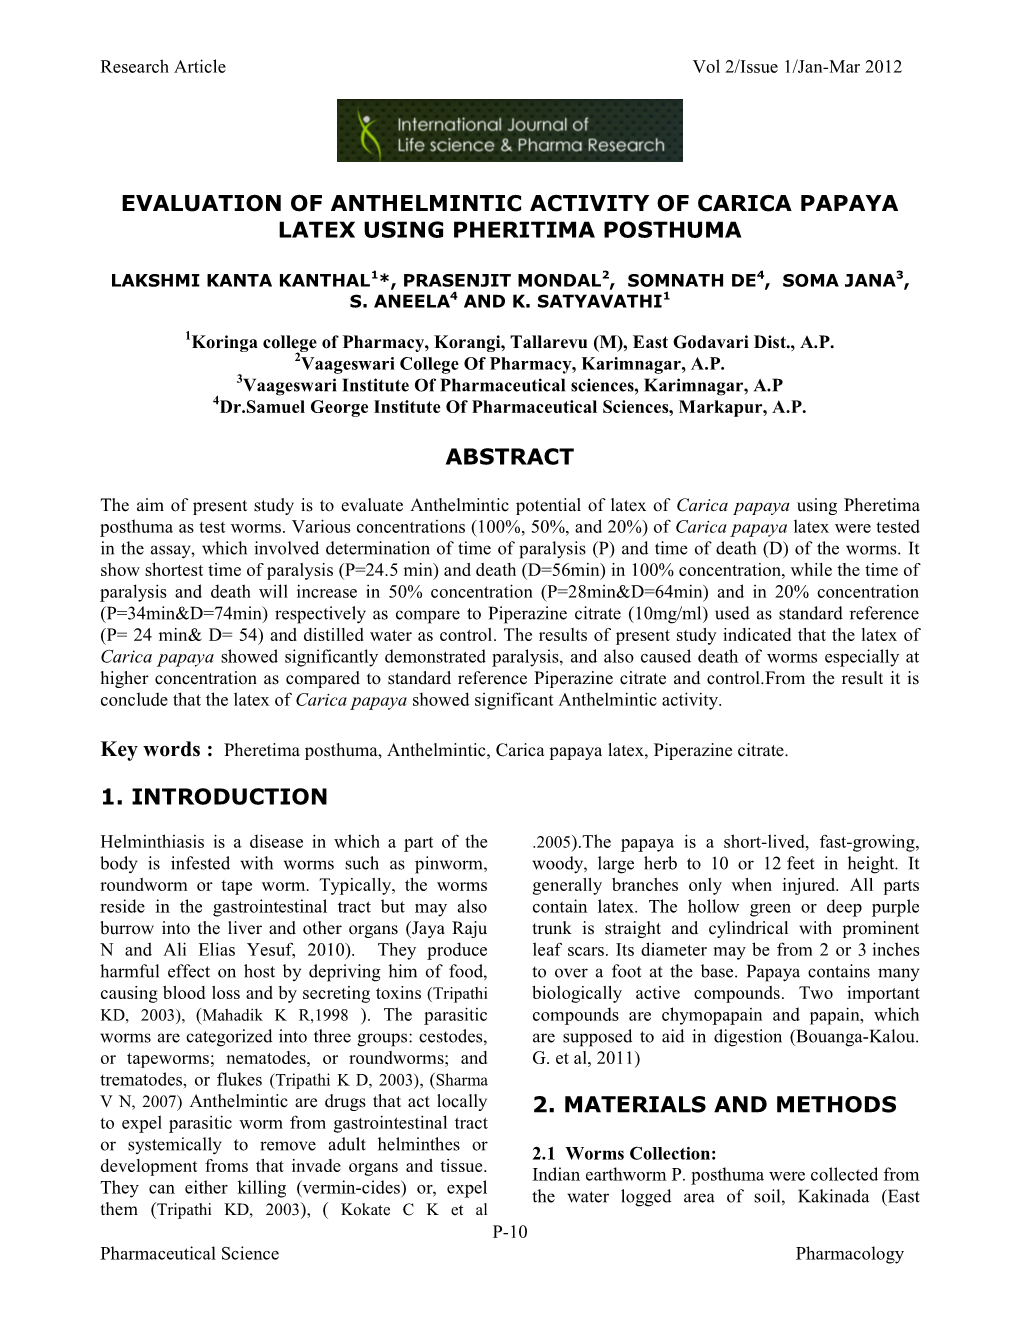 Evaluation of Anthelmintic Activity of Carica Papaya Latex Using Pheritima Posthuma